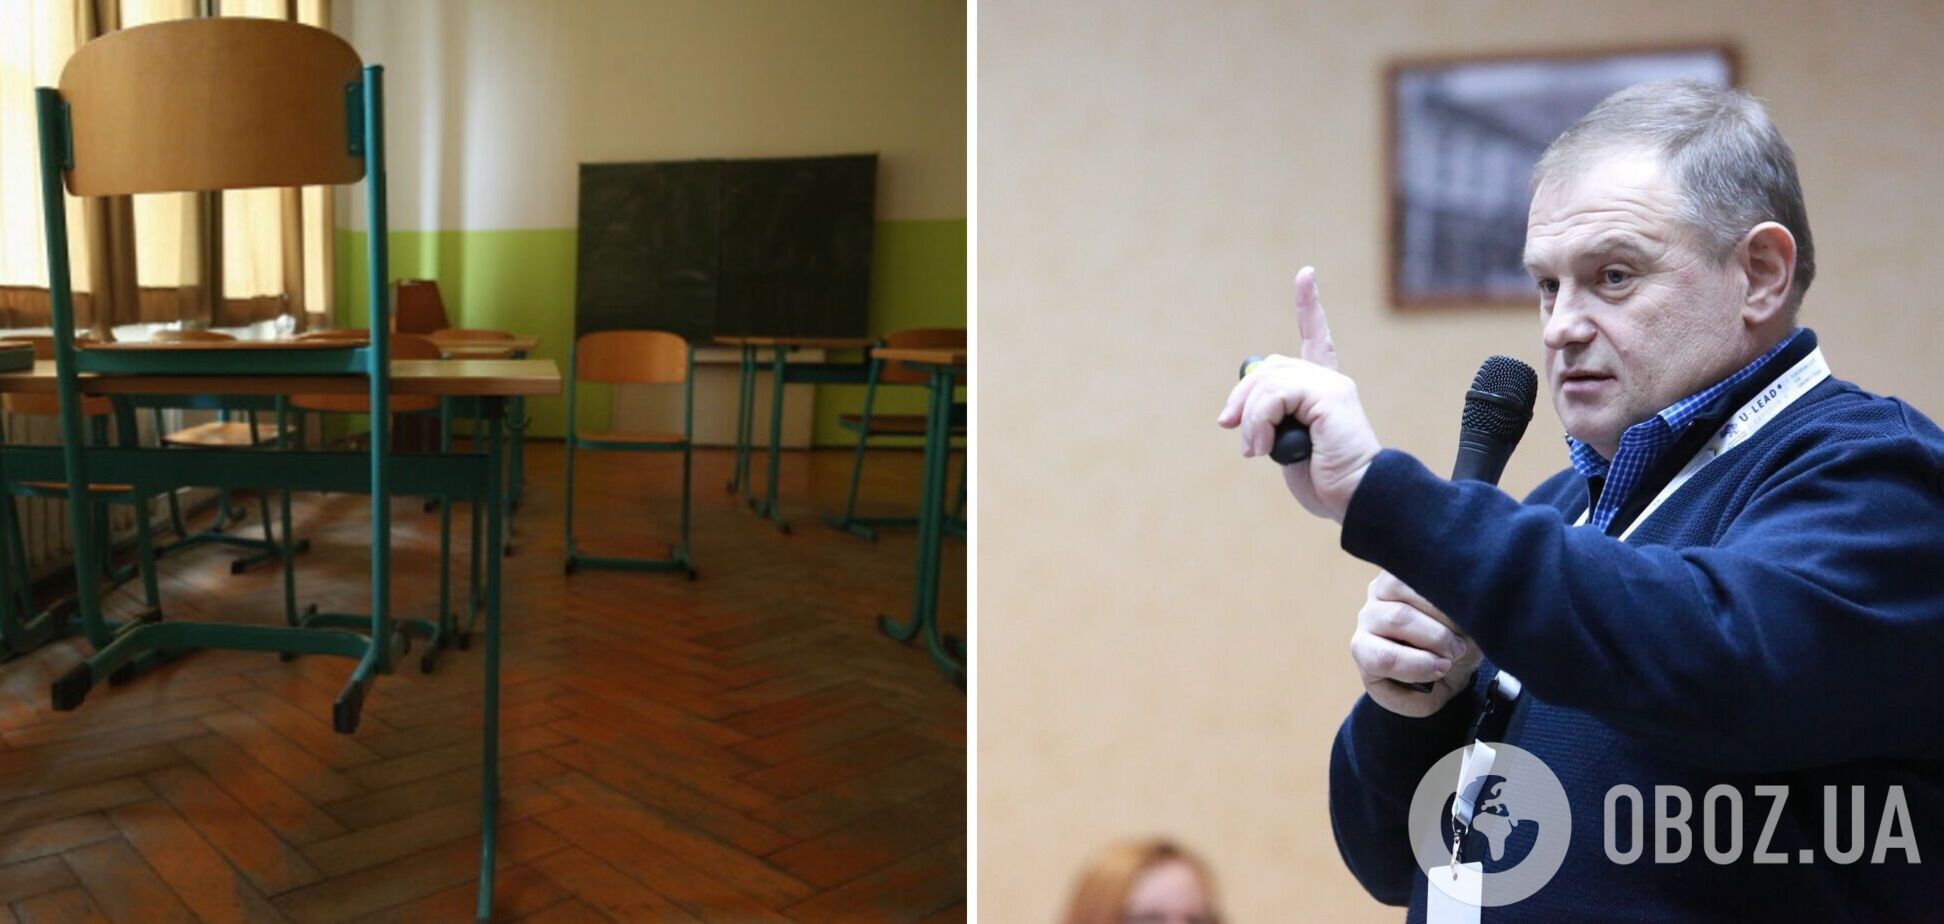 Образовательный эксперт Сергей Дятленко озвучил два варианта, которые спасут малые сельские школы от закрытия: перемены почувствуют только директор и несколько педагогов